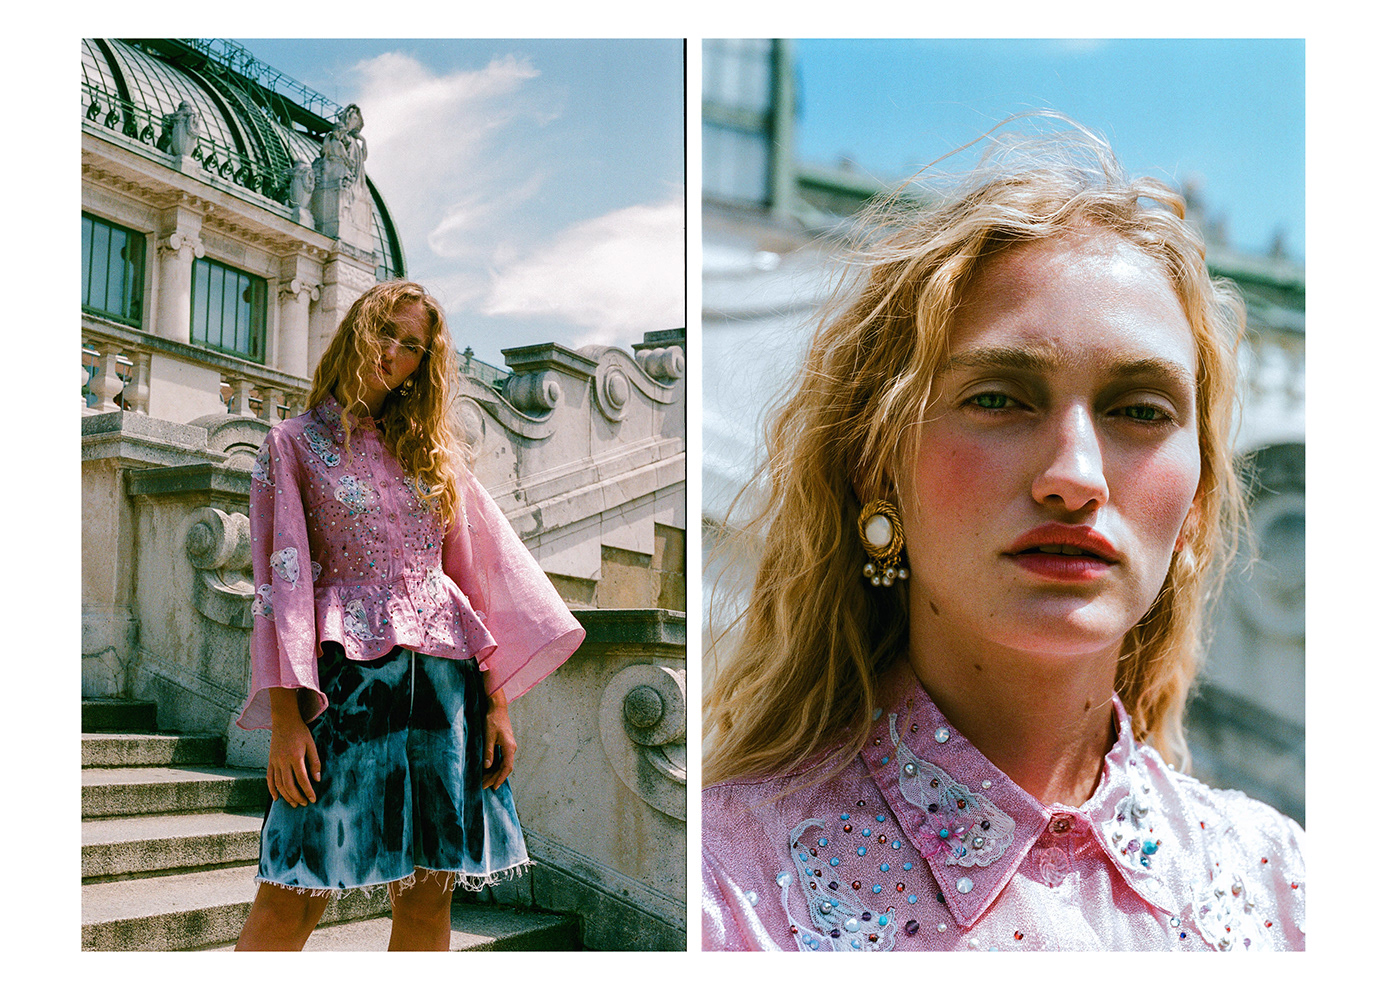 test editorial vienna agency model summer Analogue Film   minolta pink Fashion 